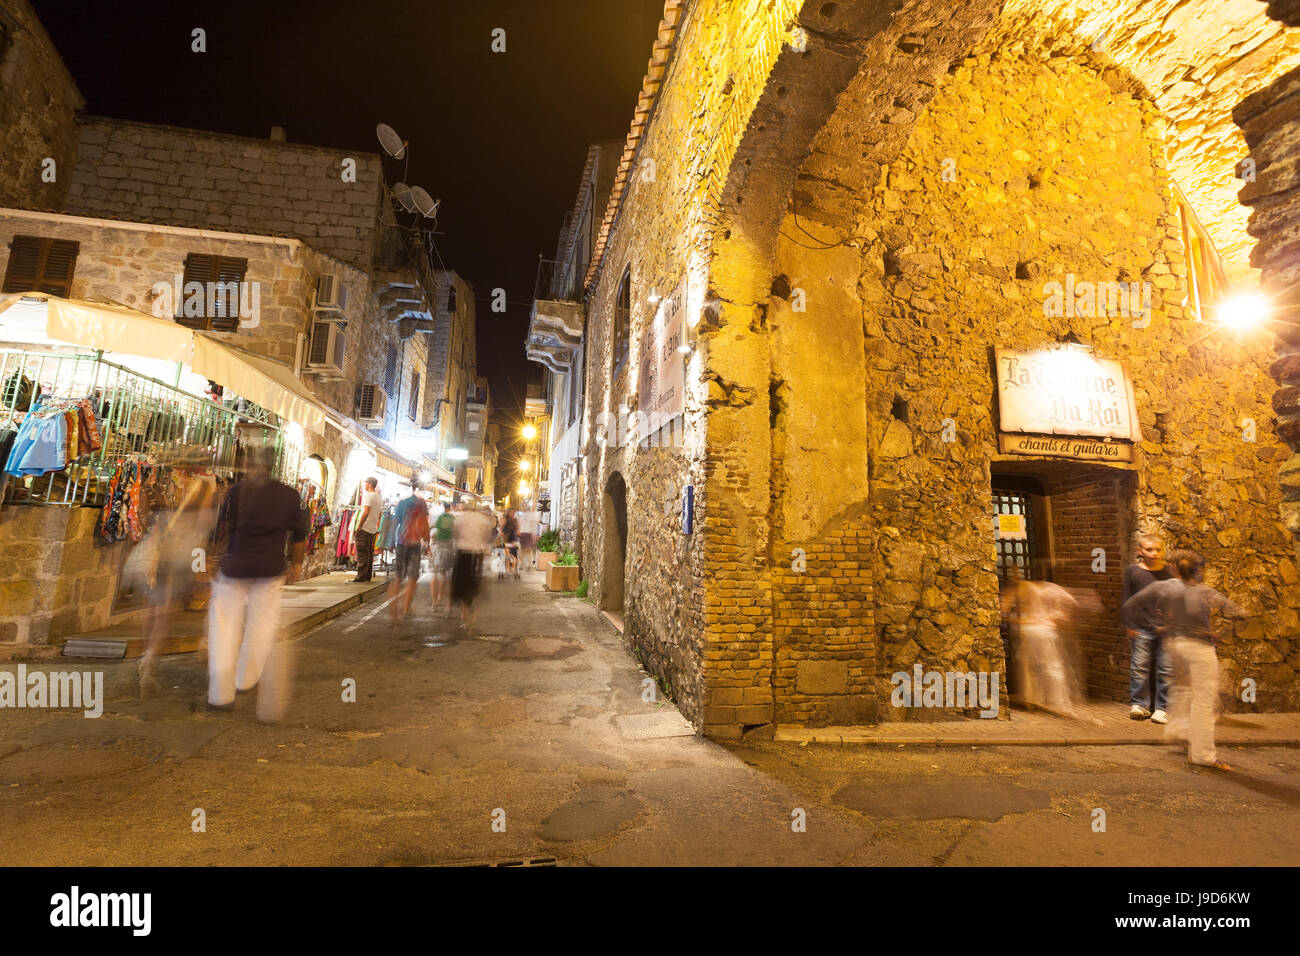 Les touristes dans les ruelles médiévales de la vieille ville, Porto Vecchio, Corse, France, Europe Banque D'Images